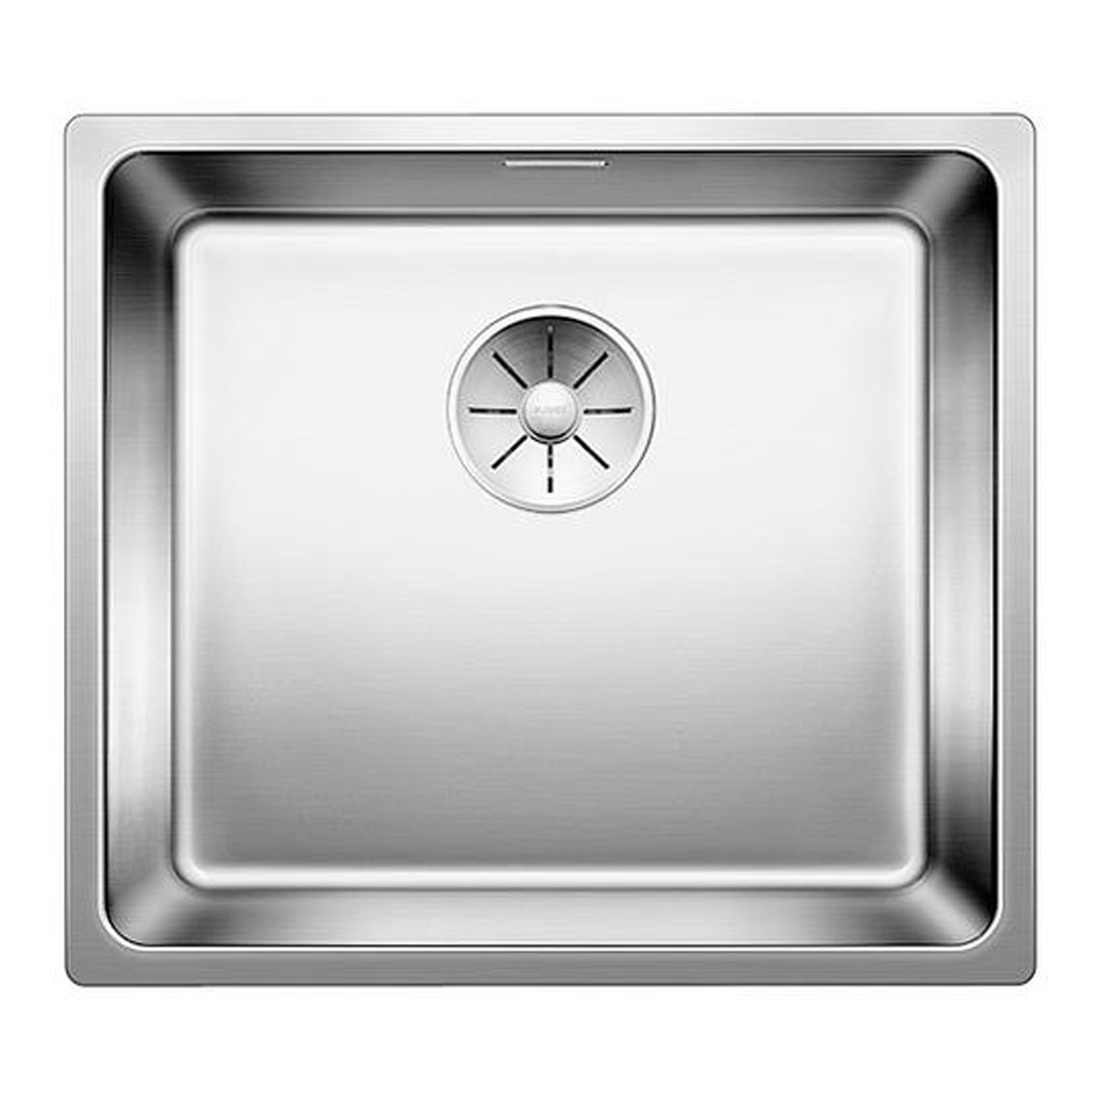 Кухонная мойка Blanco Andano 450-IF полированная сталь кухонная мойка blanco zerox 340 if нержавеющая сталь